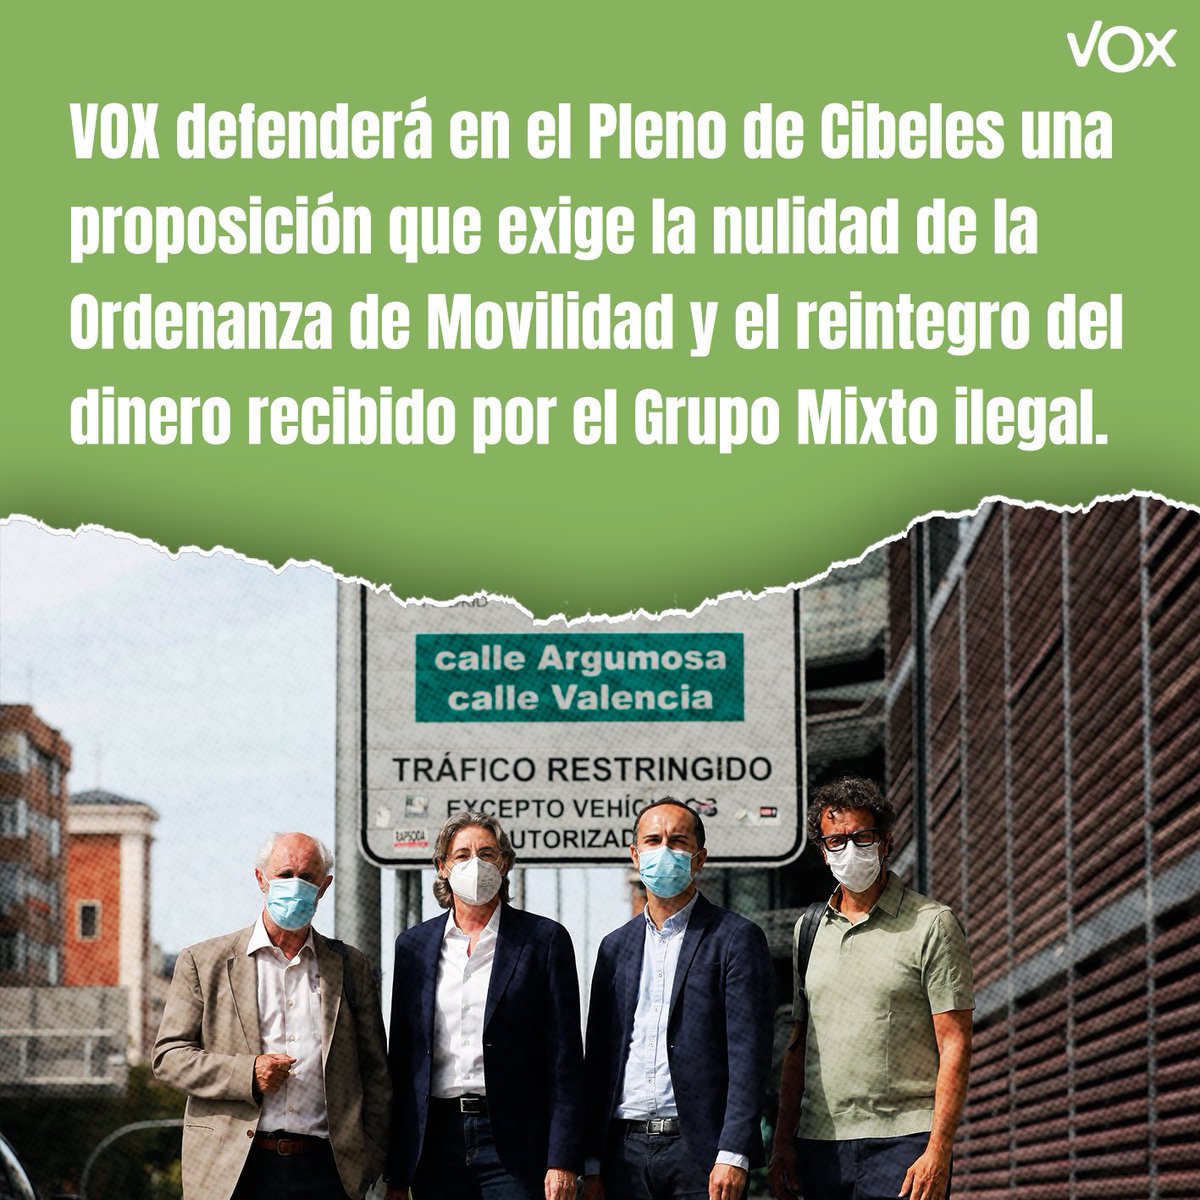 ‼️ #URGENTE VOX defenderá en el Pleno de Cibeles una proposición que exige la nulidad de la Ordenanza de Movilidad y el reintegro del dinero recibido por el Grupo Mixto ilegal. ⬇️⬇️⬇️